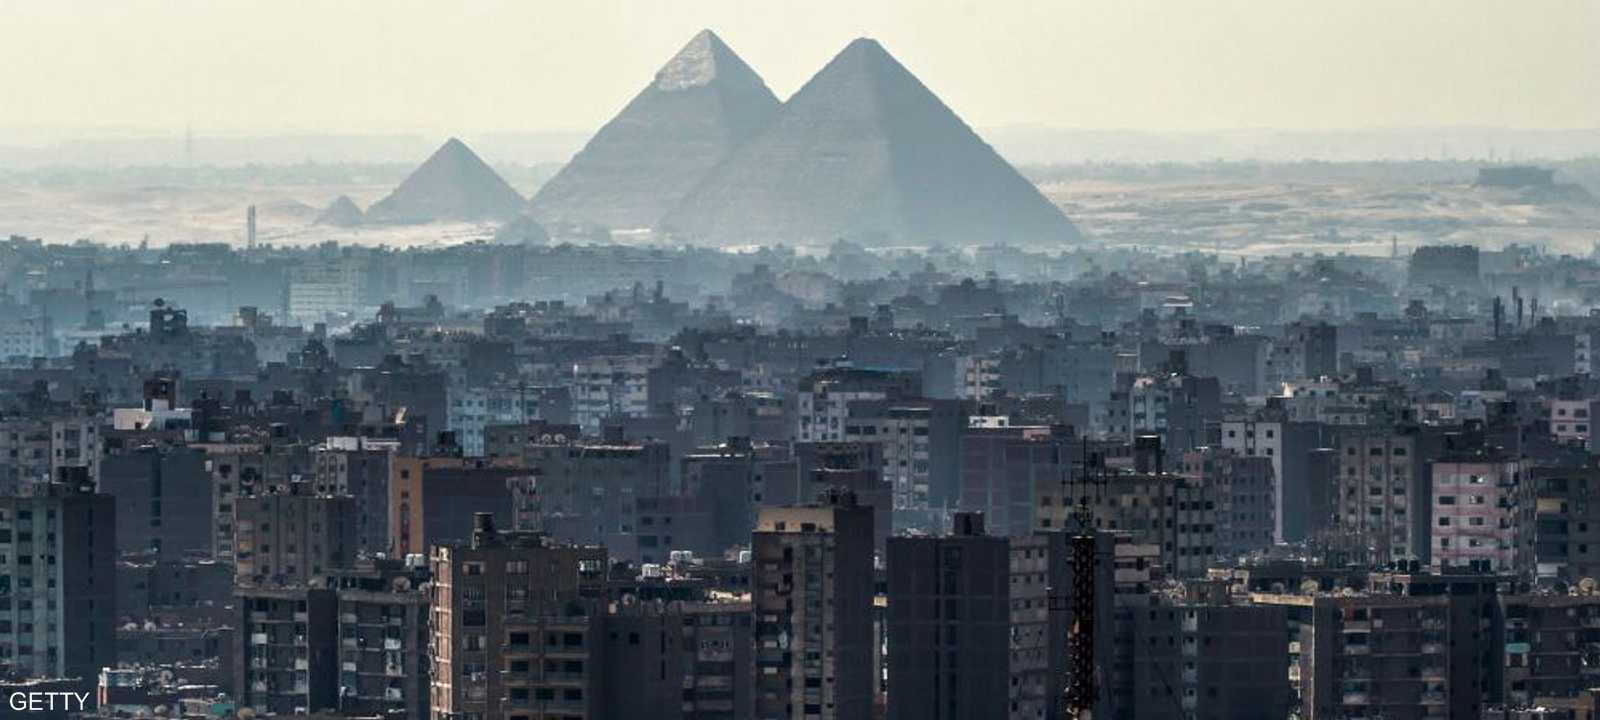 عجز الميزان التجاري يتراجع في مصر